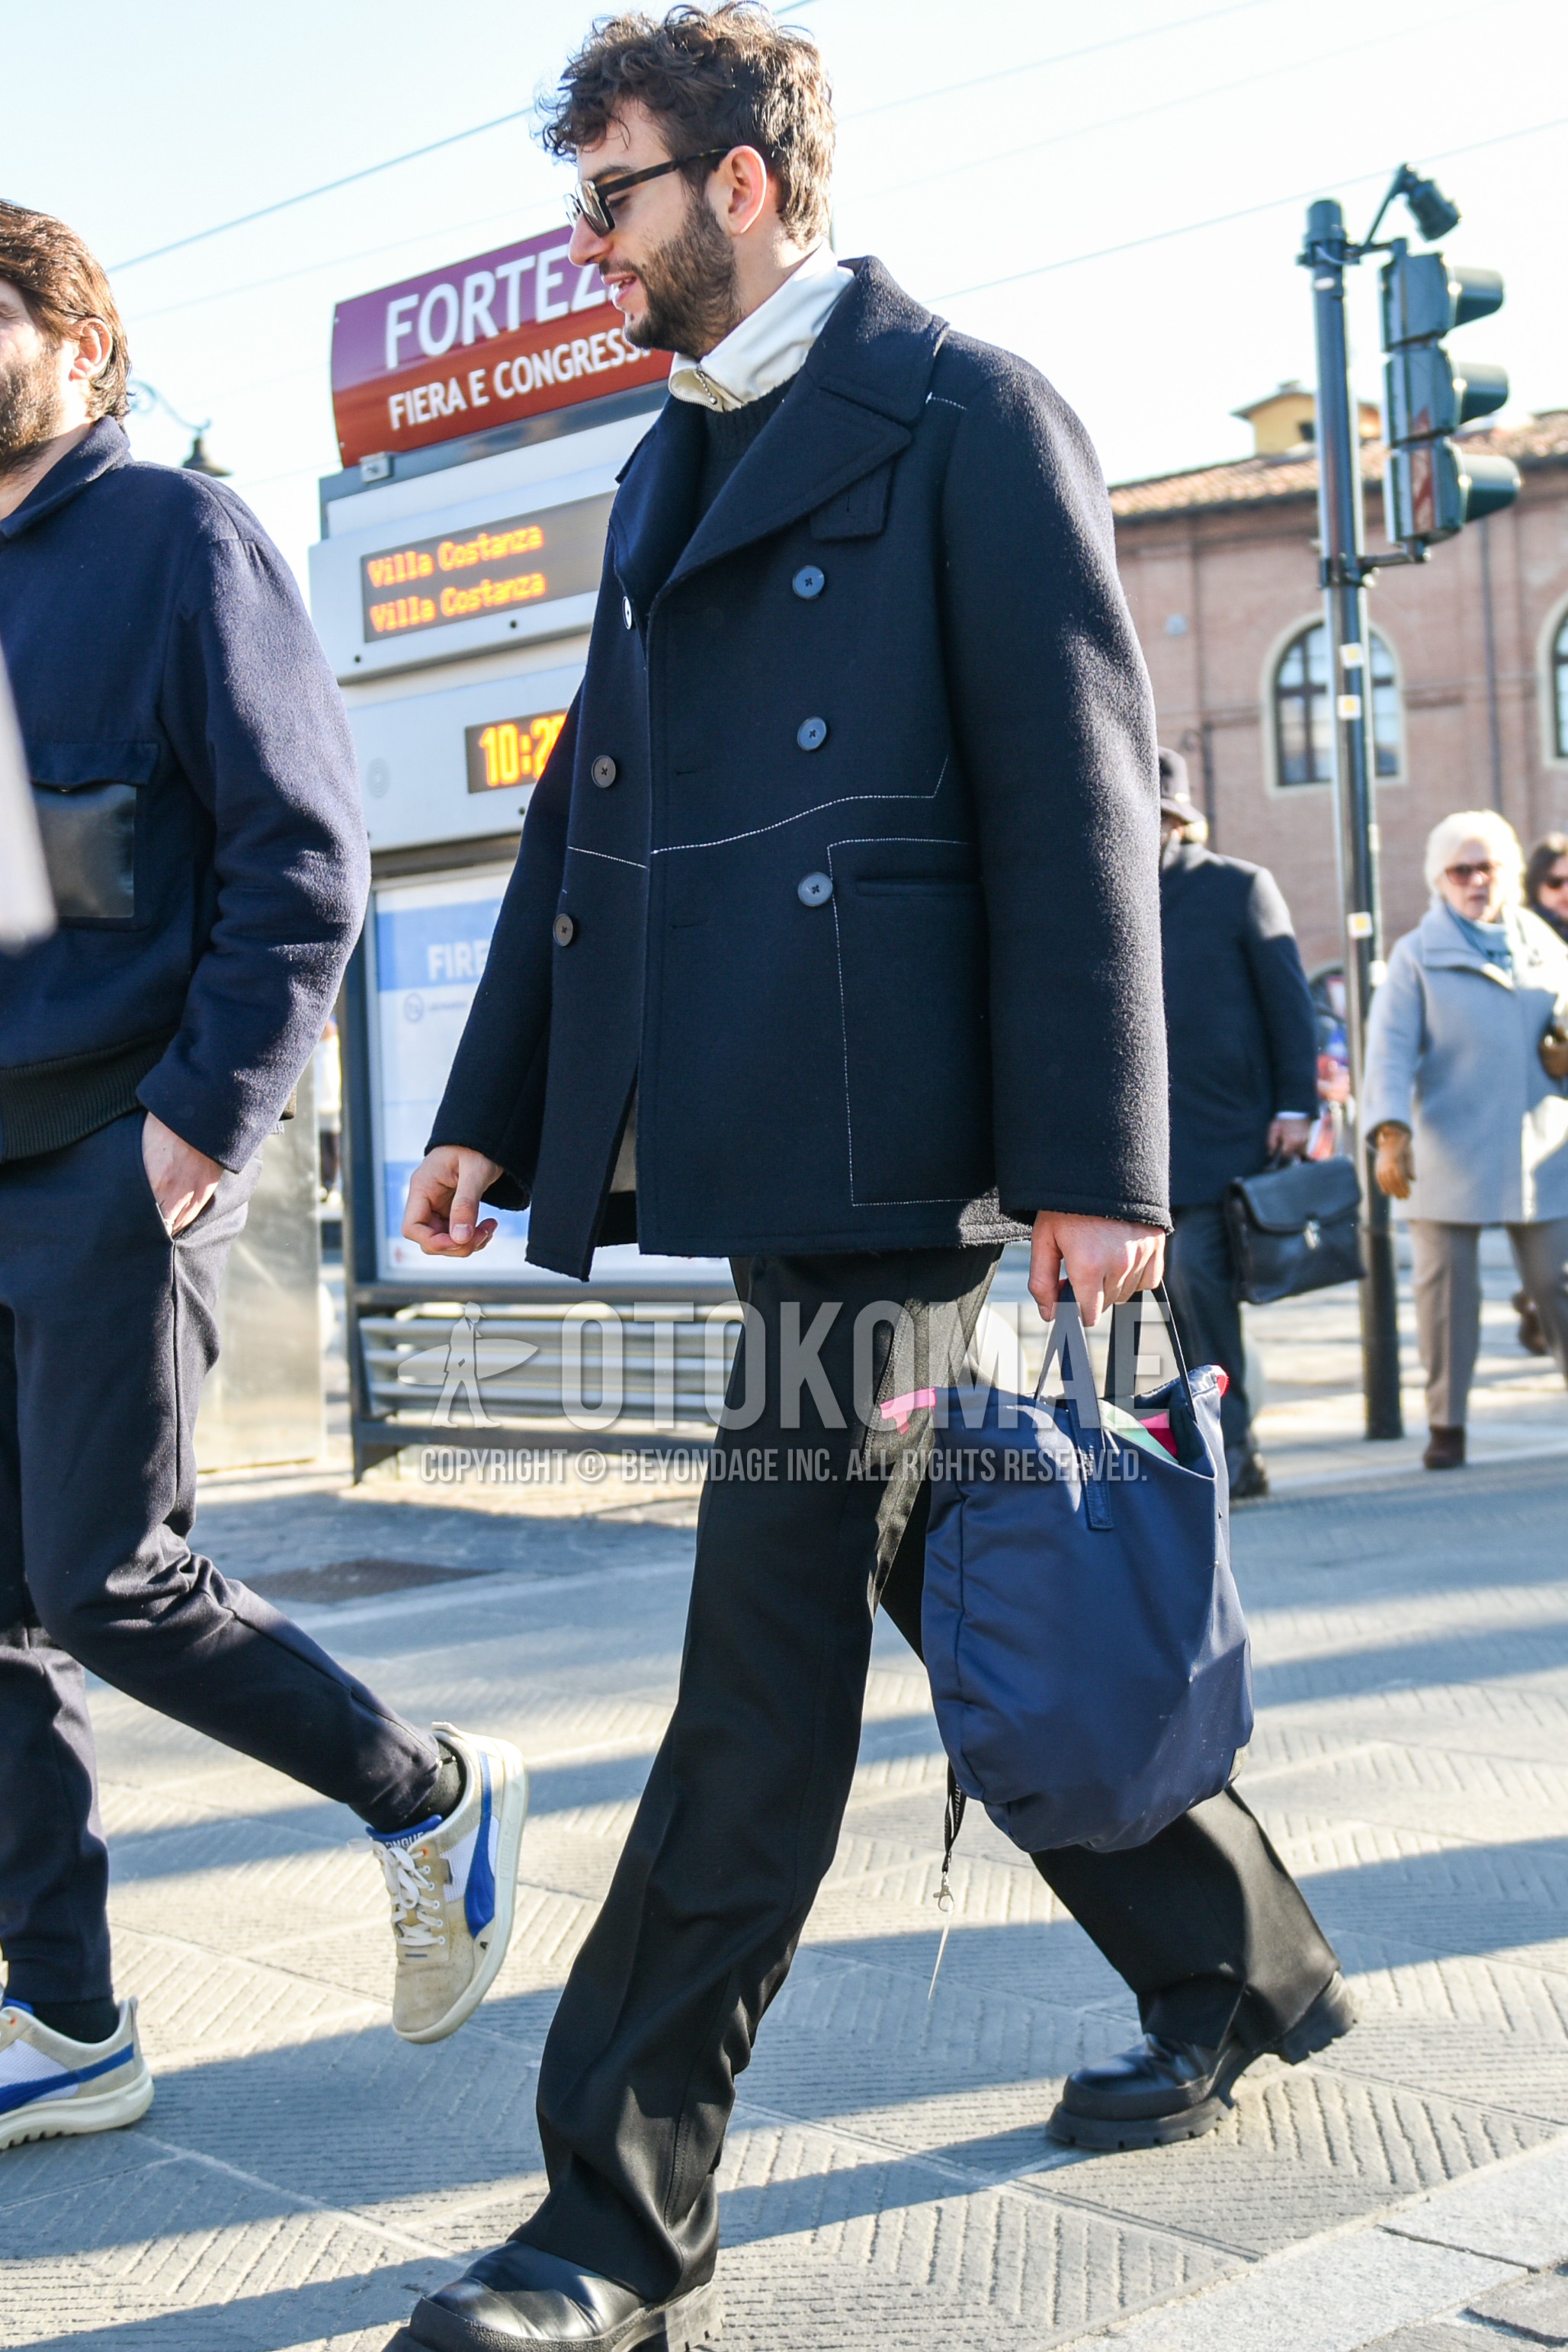 Men's autumn winter outfit with black plain sunglasses, navy plain p coat, dark gray plain sweater, white plain shirt, black plain denim/jeans, black  boots, gray plain briefcase/handbag.